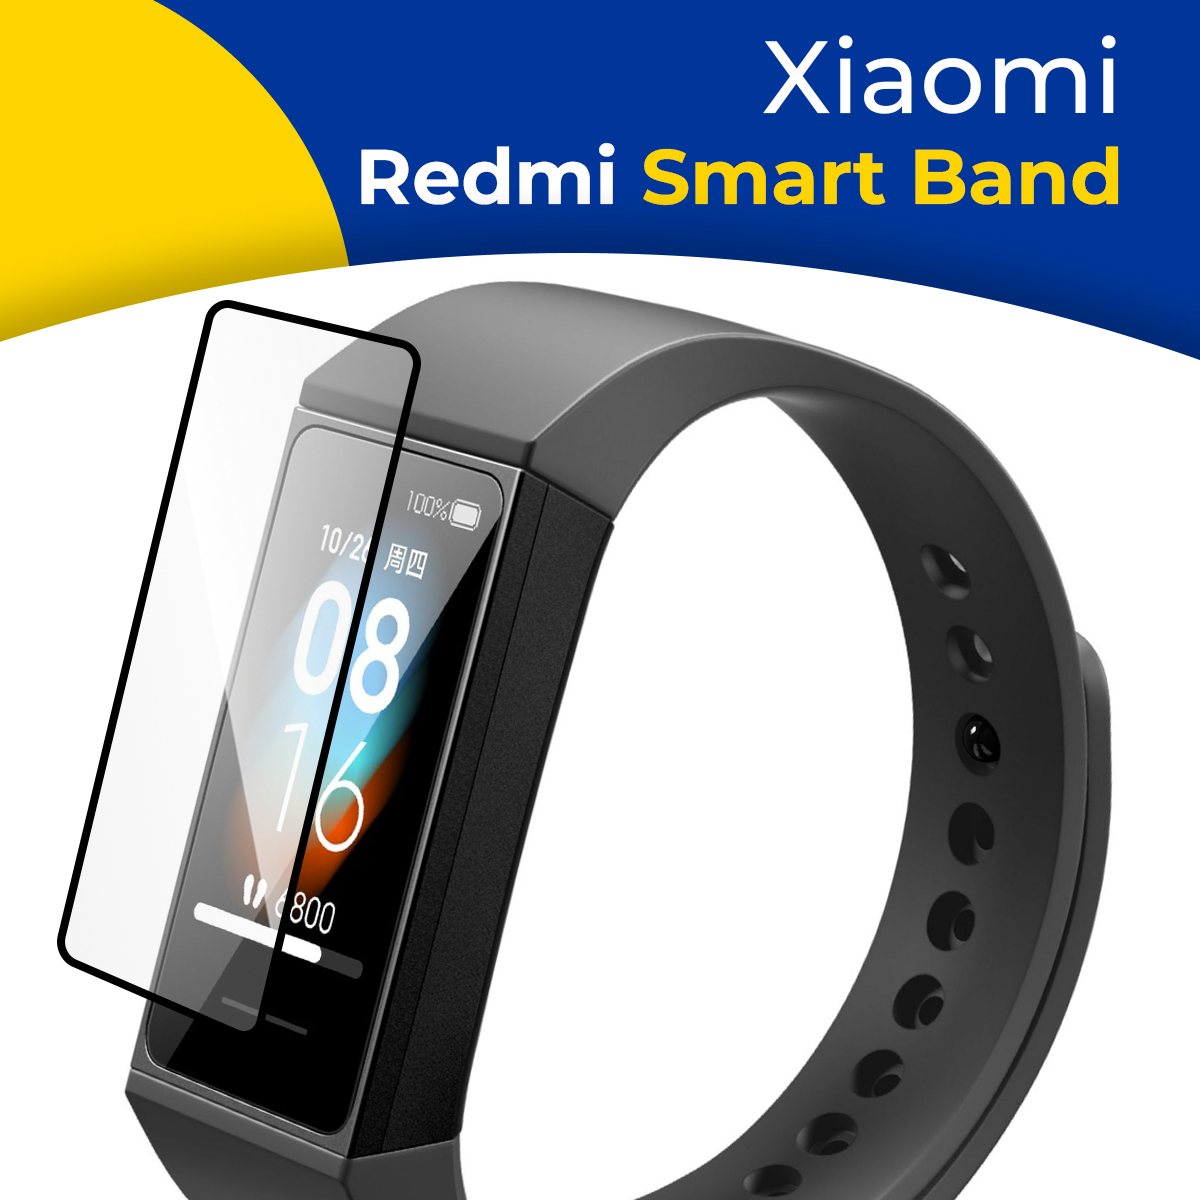 Гидрогелевая защитная пленка на смарт часы Xiaomi Redmi Smart Band / Самовосстанавливающаяся бронепленка для умных часов Сяоми Редми Смарт Бэнд